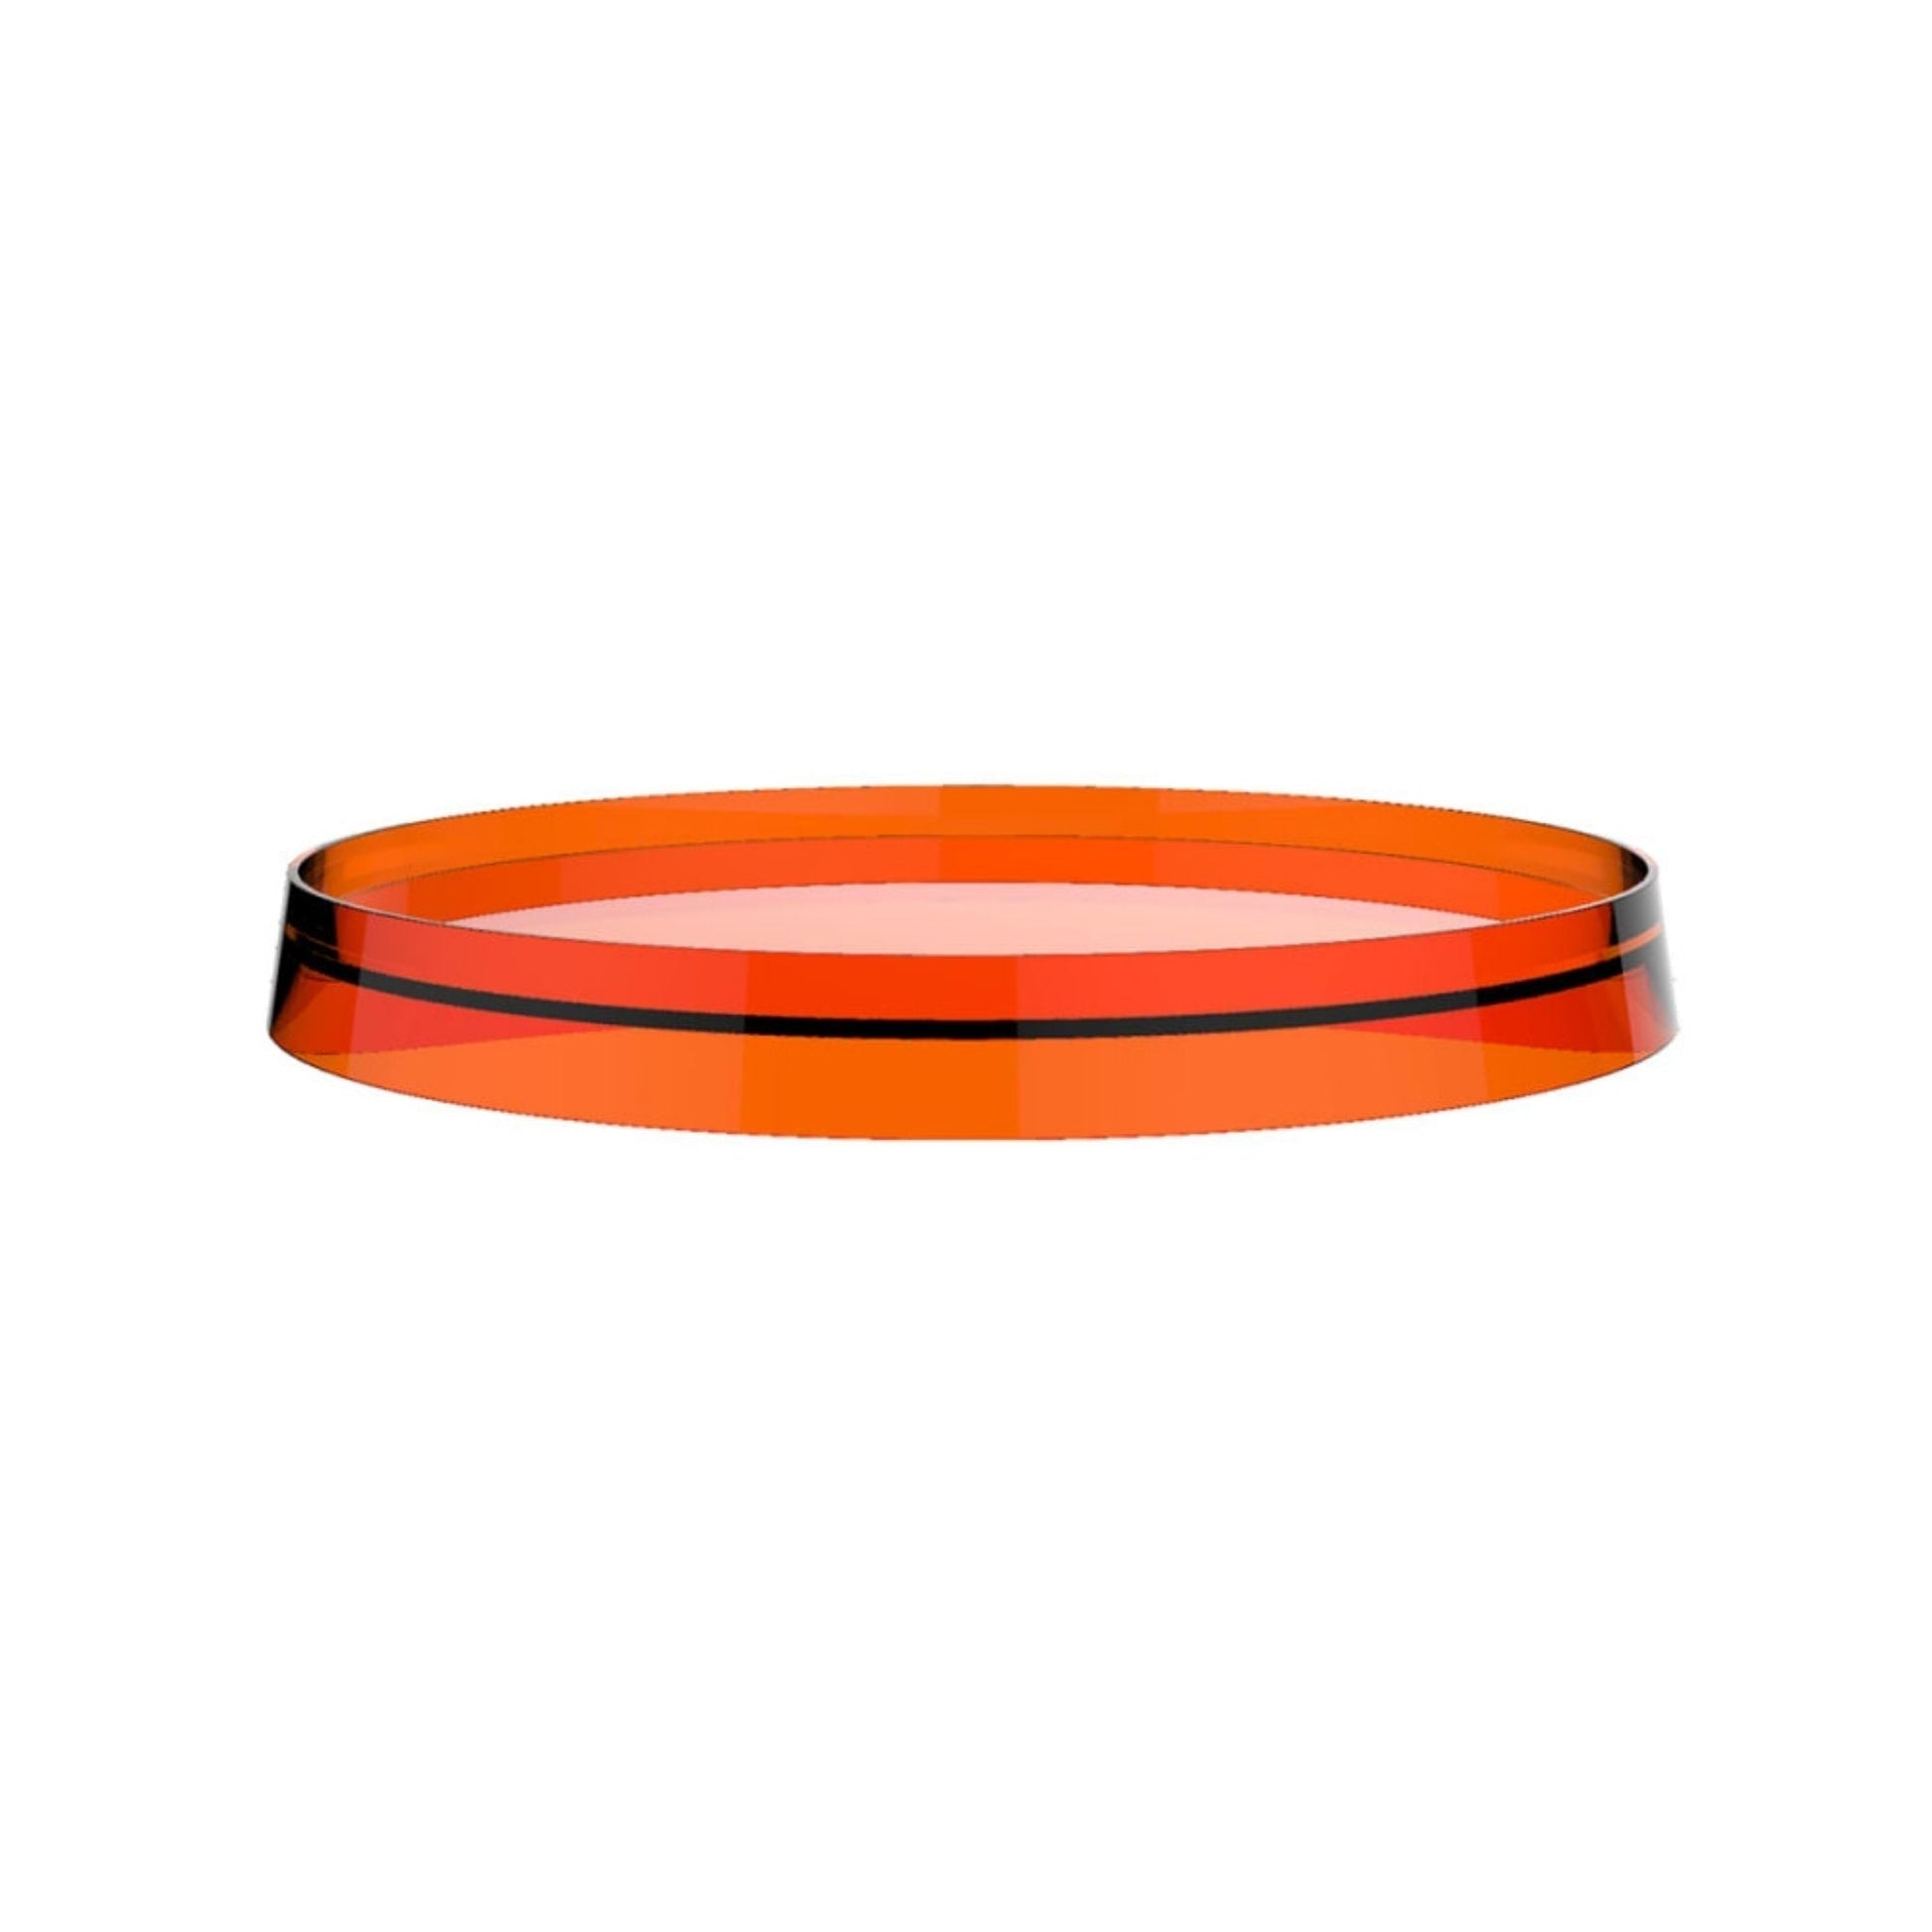 Laufen Kartell 11" Tangerine Orange Disc Tray for Bathtub Faucet Model H321331